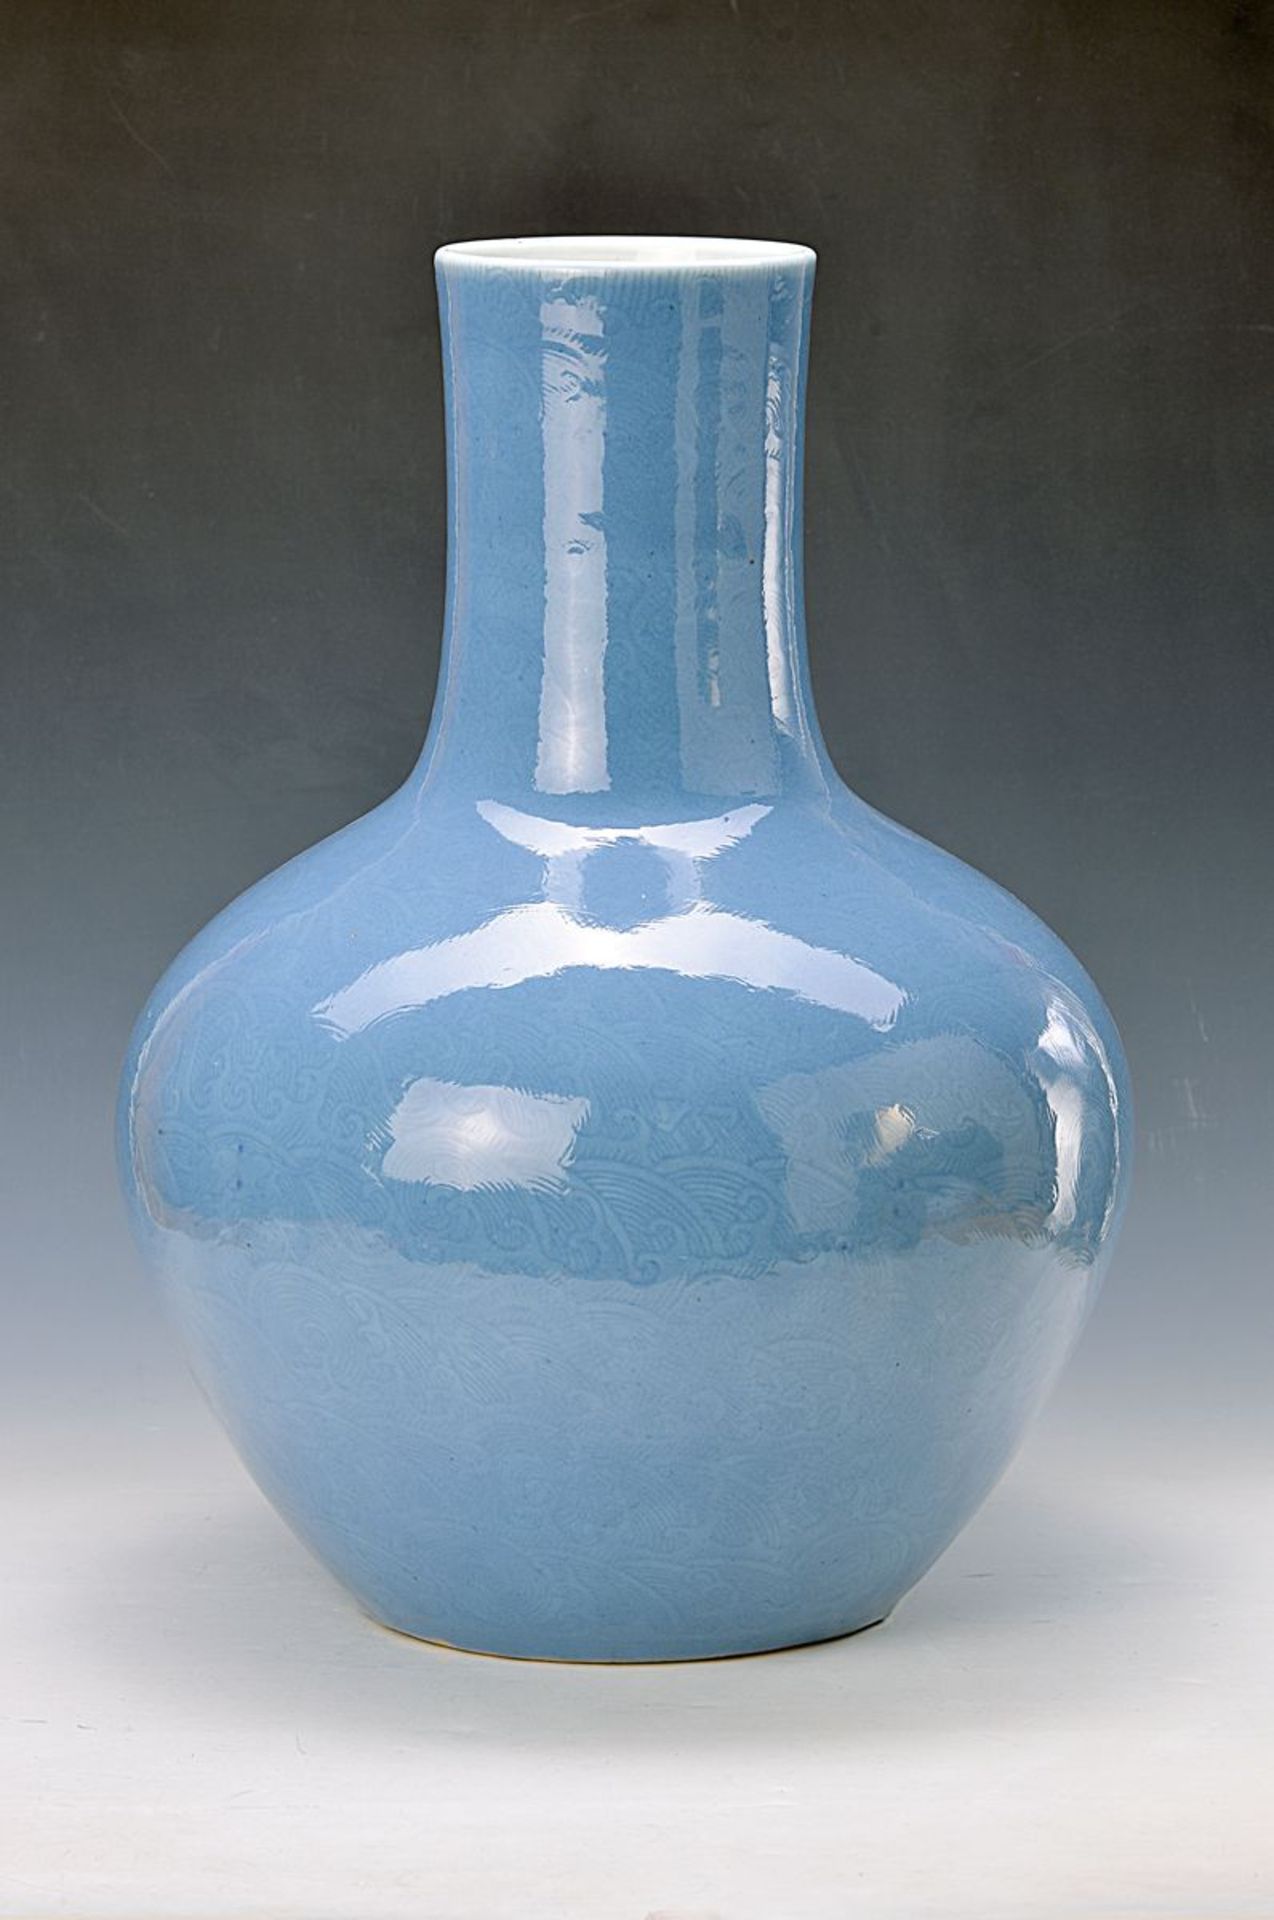 Große bauchige Vase, China, wohl um 1705-10, Porzellan, wohl Kangxi, Korpus fein geschnitten, mit